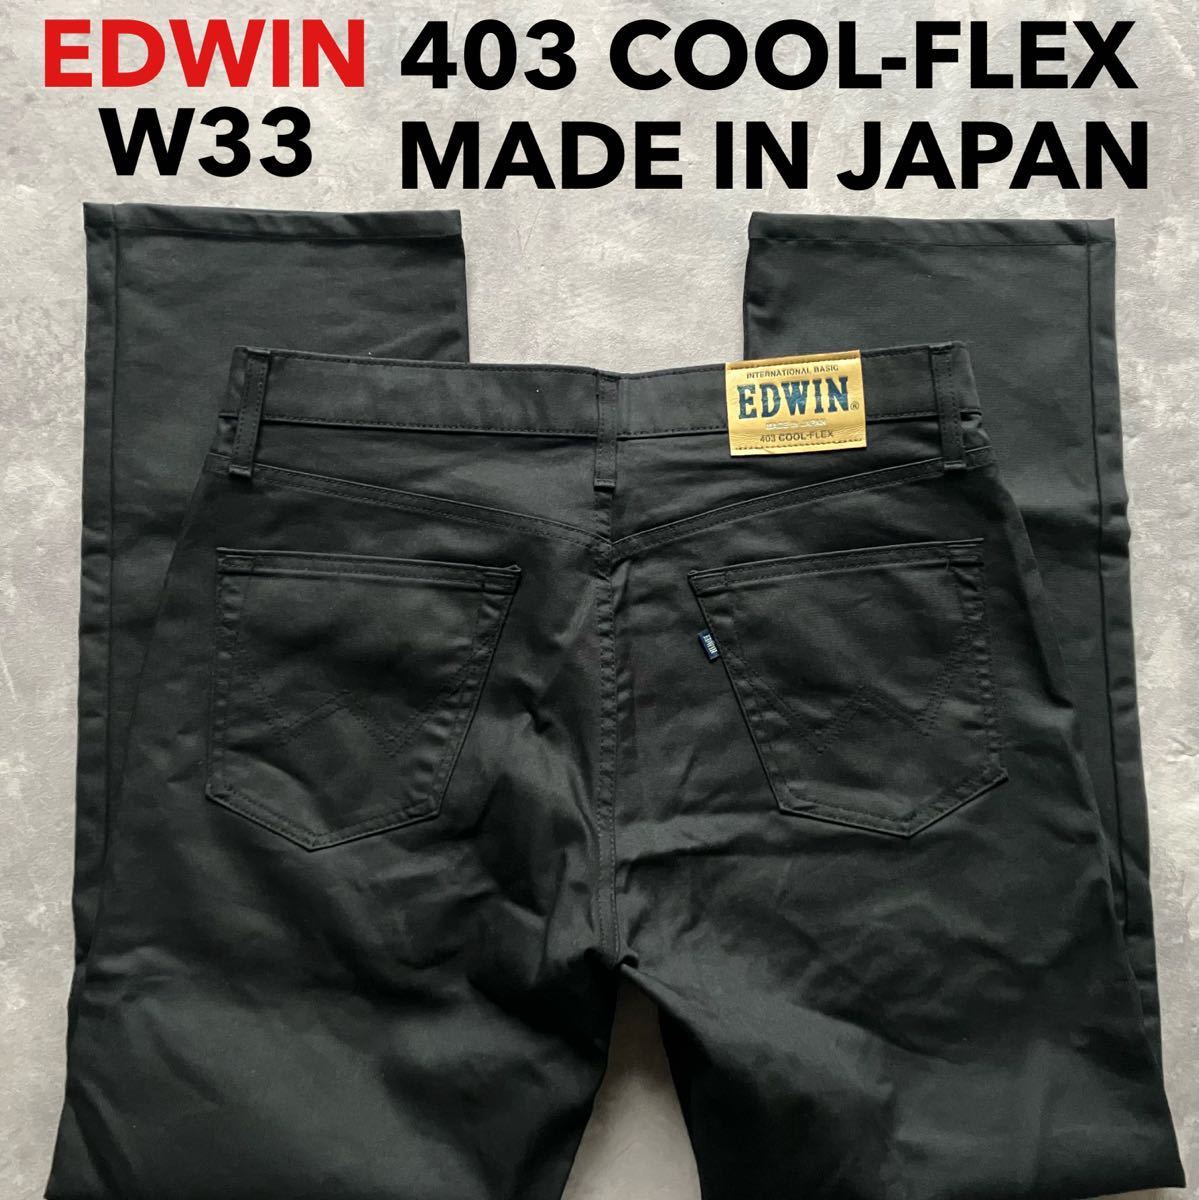 即決 W33 EDWIN エドウィン 春夏モデル 軽量 FC403A クール フレックス ブラック 日本製 MADE IN JAPAN COOL-FLEX_画像1